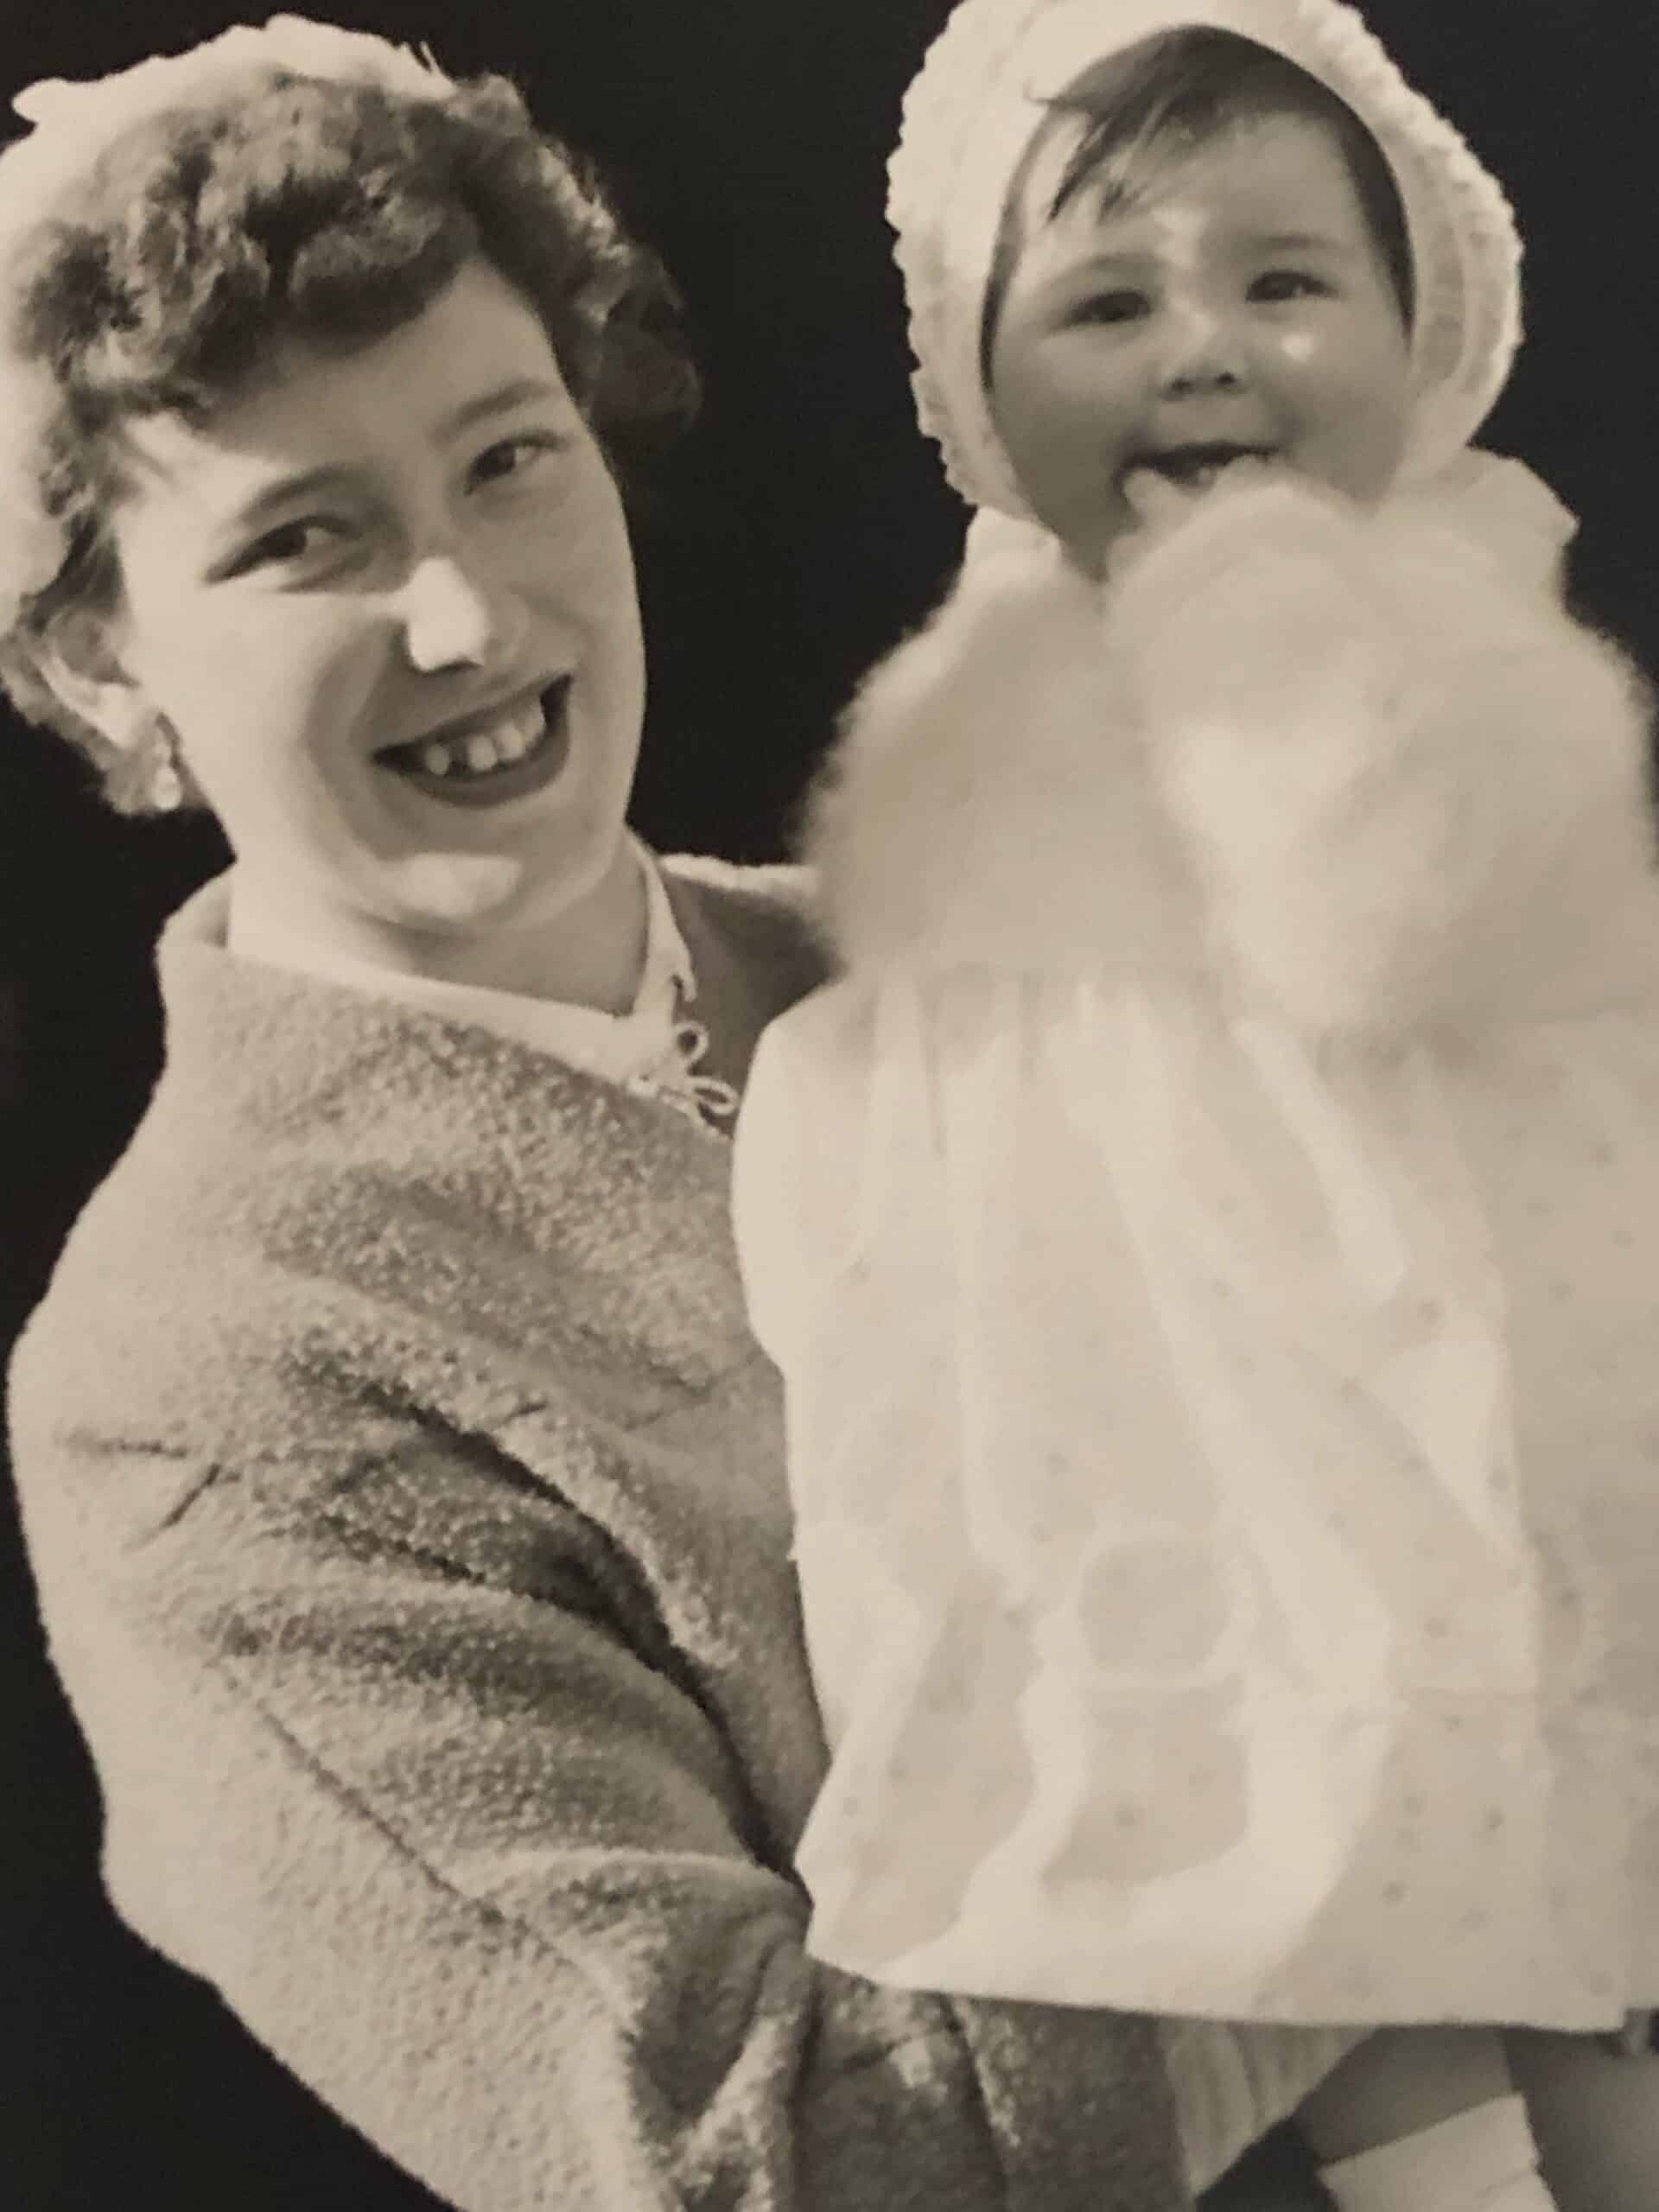 Julie Mamo som baby sammen med hennes adoptivmor Mavis. Bildet er fargelagt og forbedret av MyHeritage.